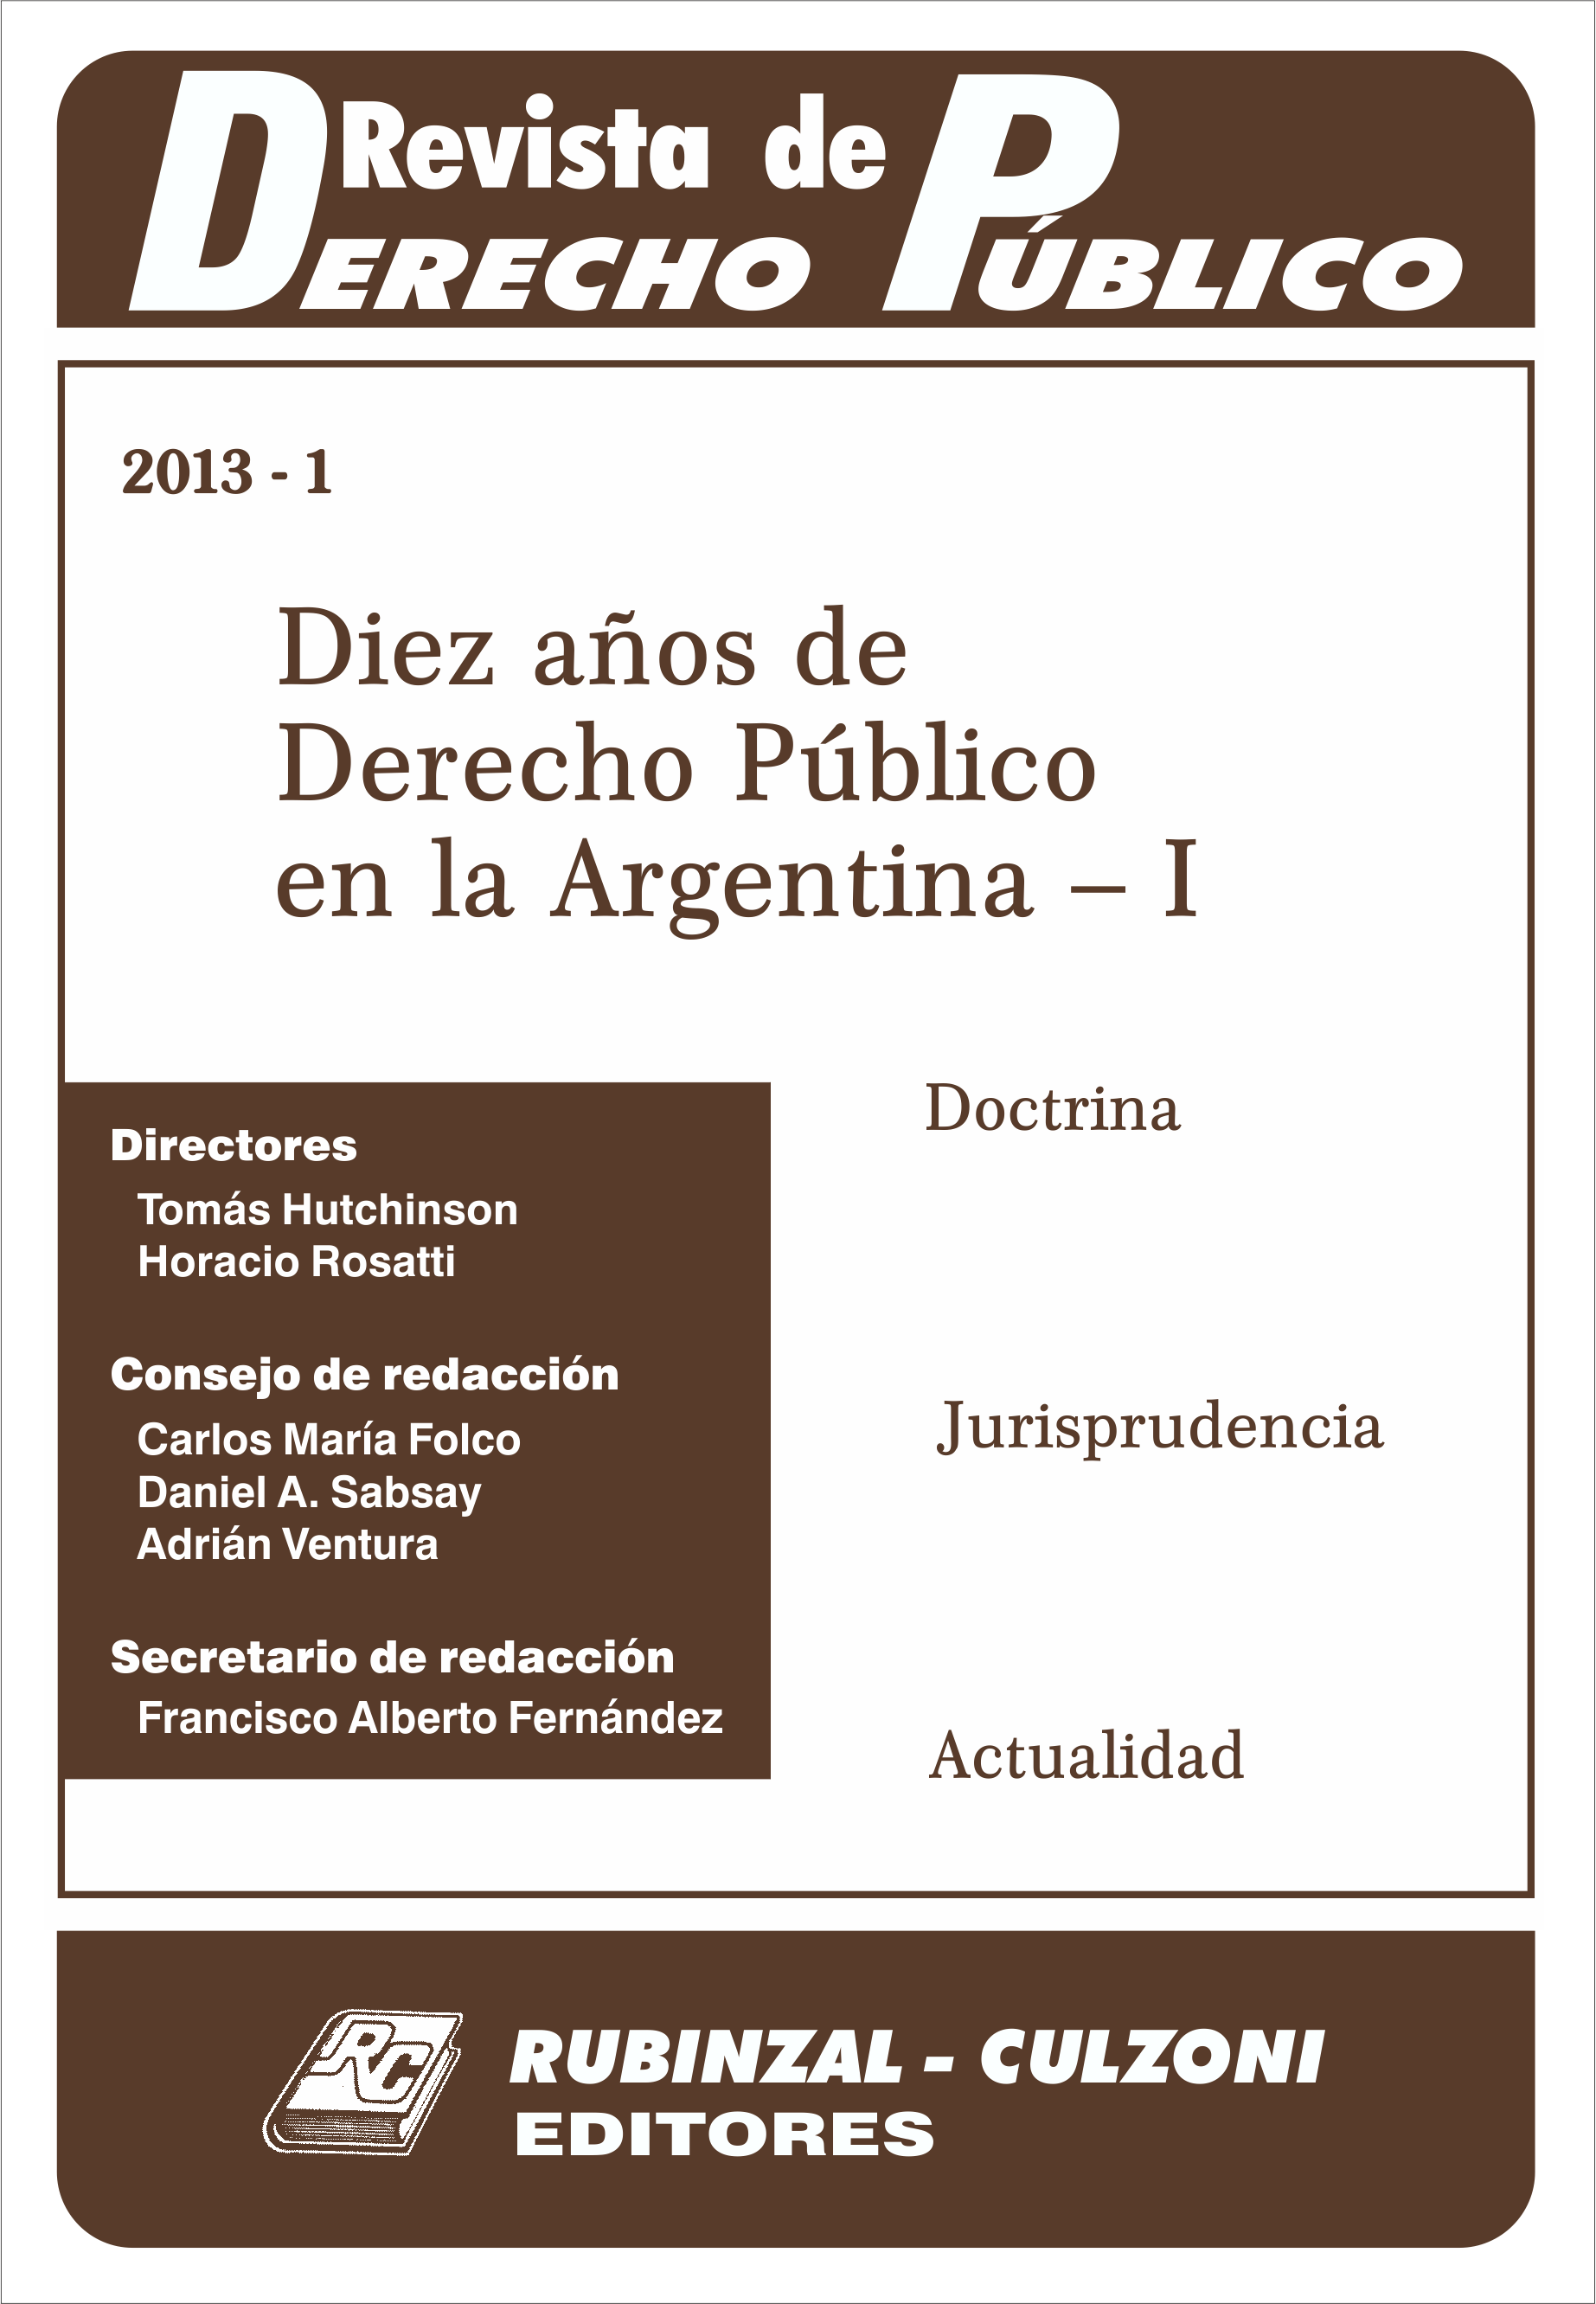 Revista de Derecho Público - Diez años de Derecho Público en la Argentina - I